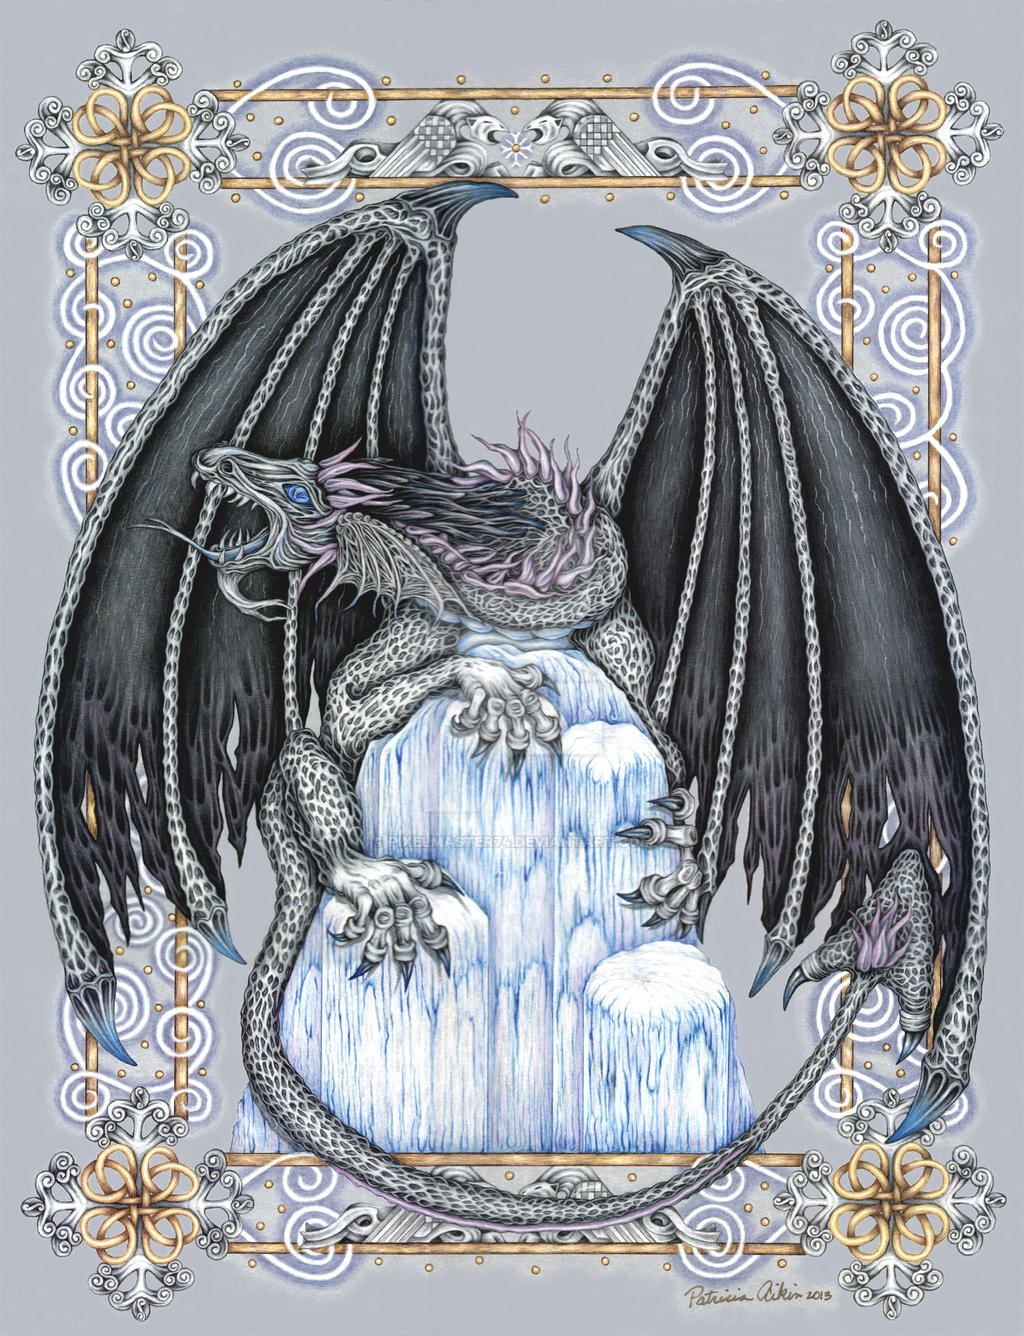 Winter Dragon by Pixelmaster74 on DeviantArt